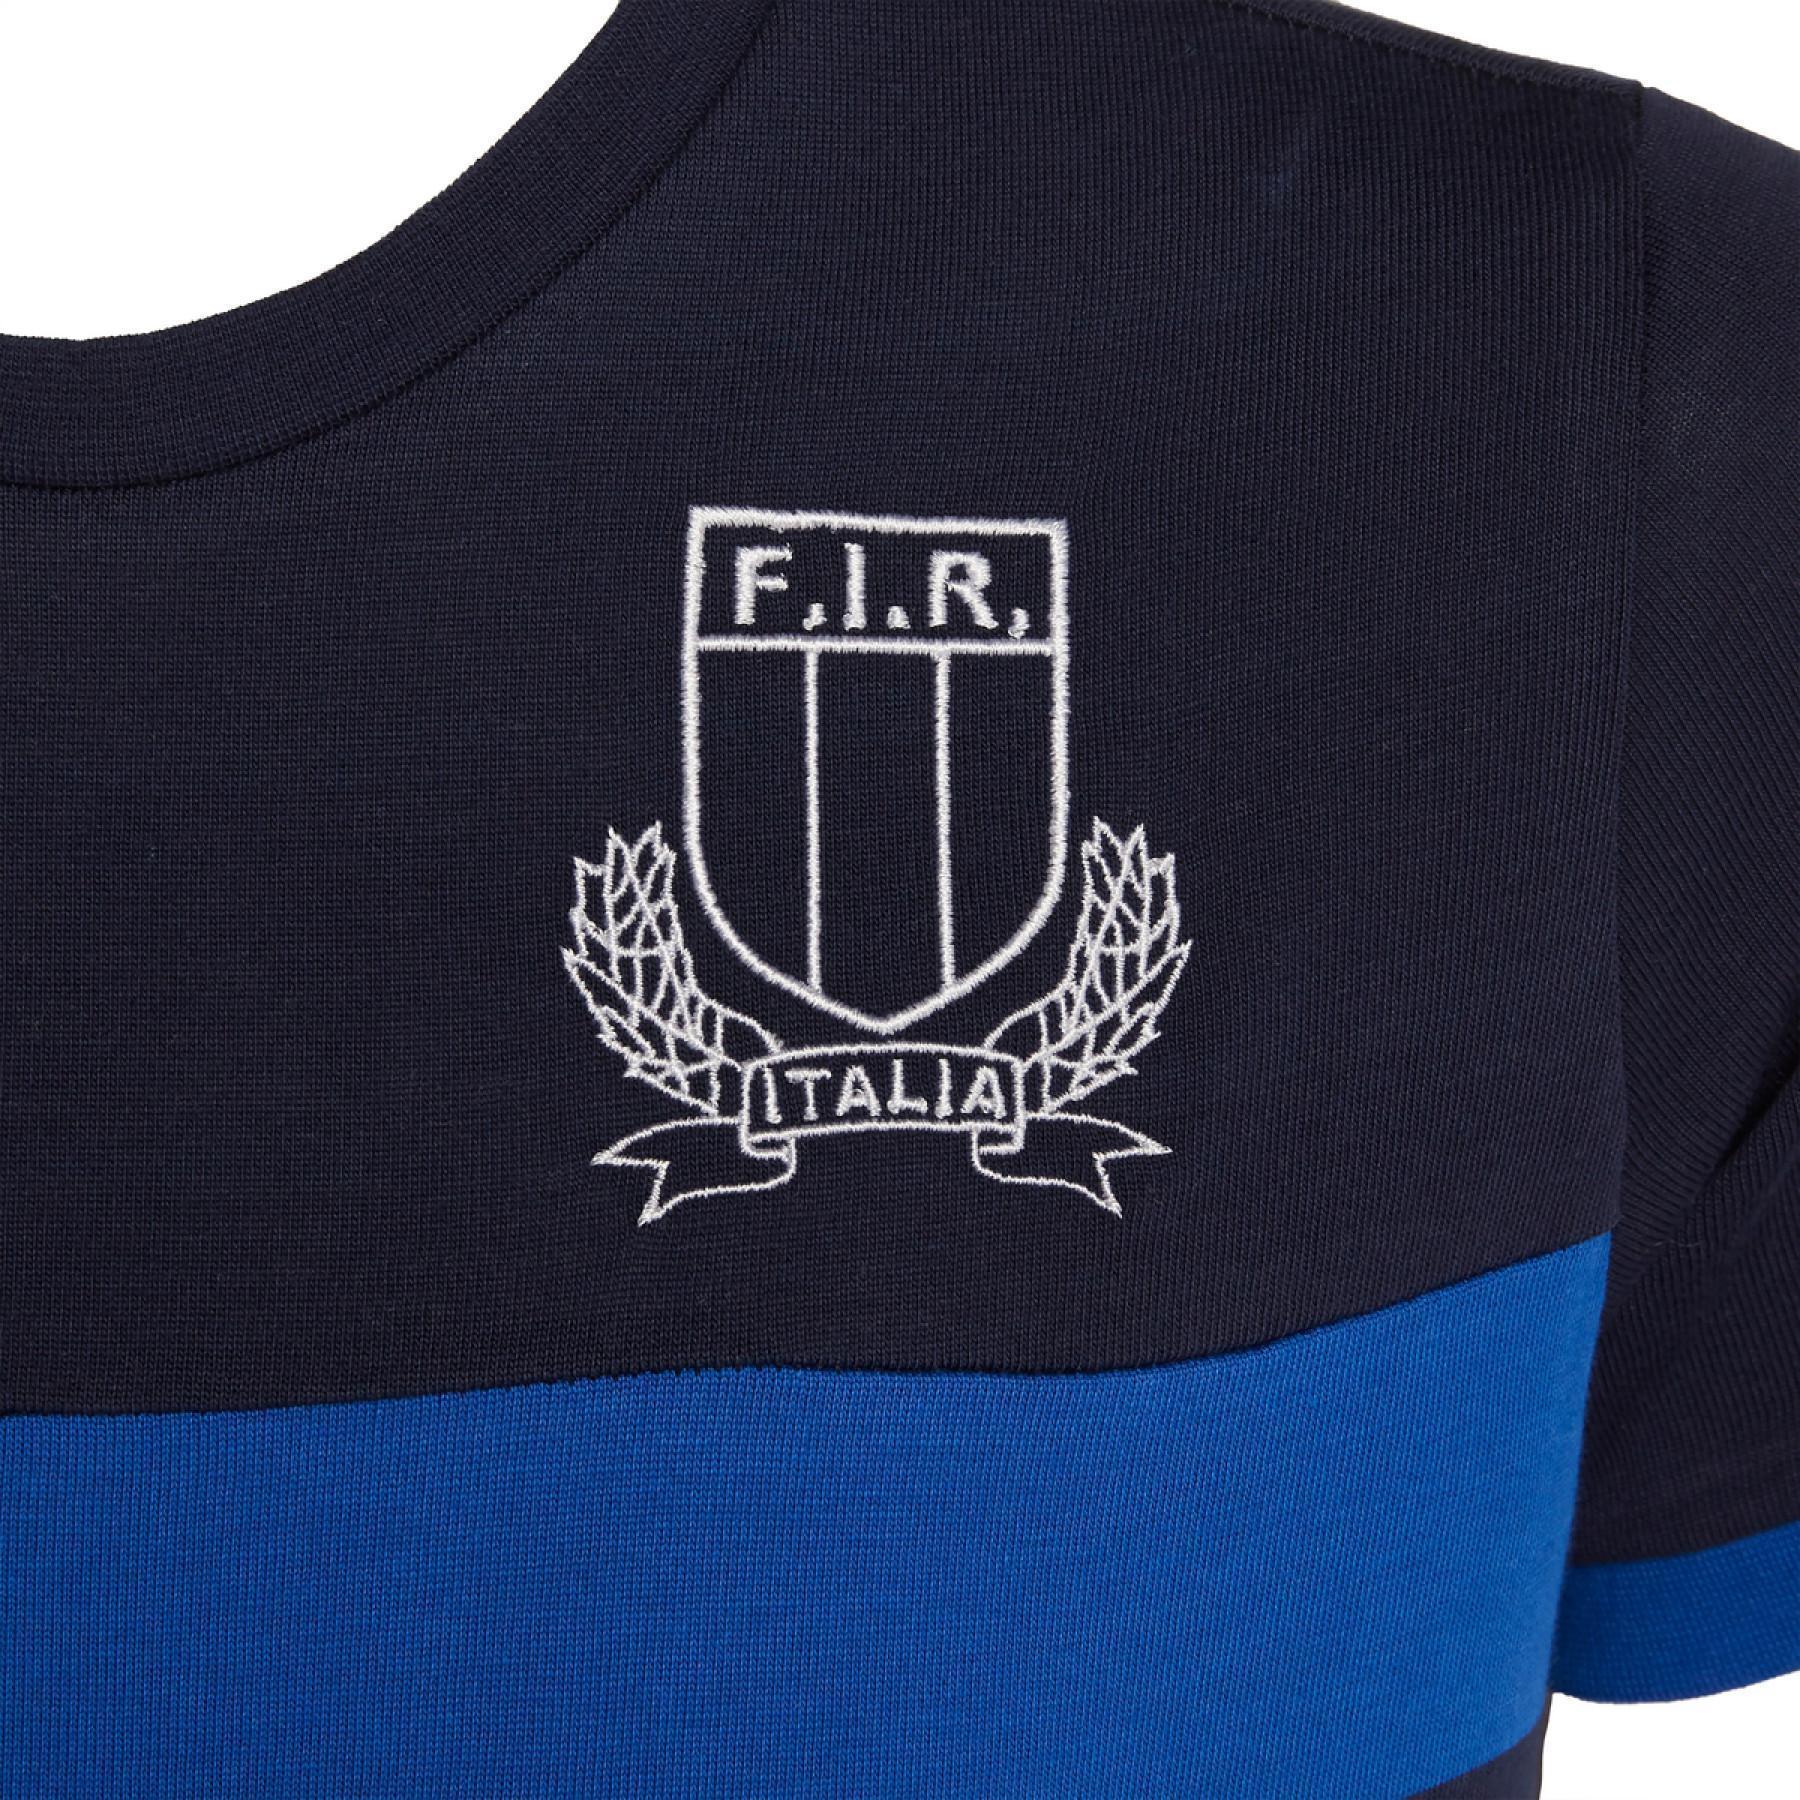 T-shirt criança en algodão Italie rugby 2019